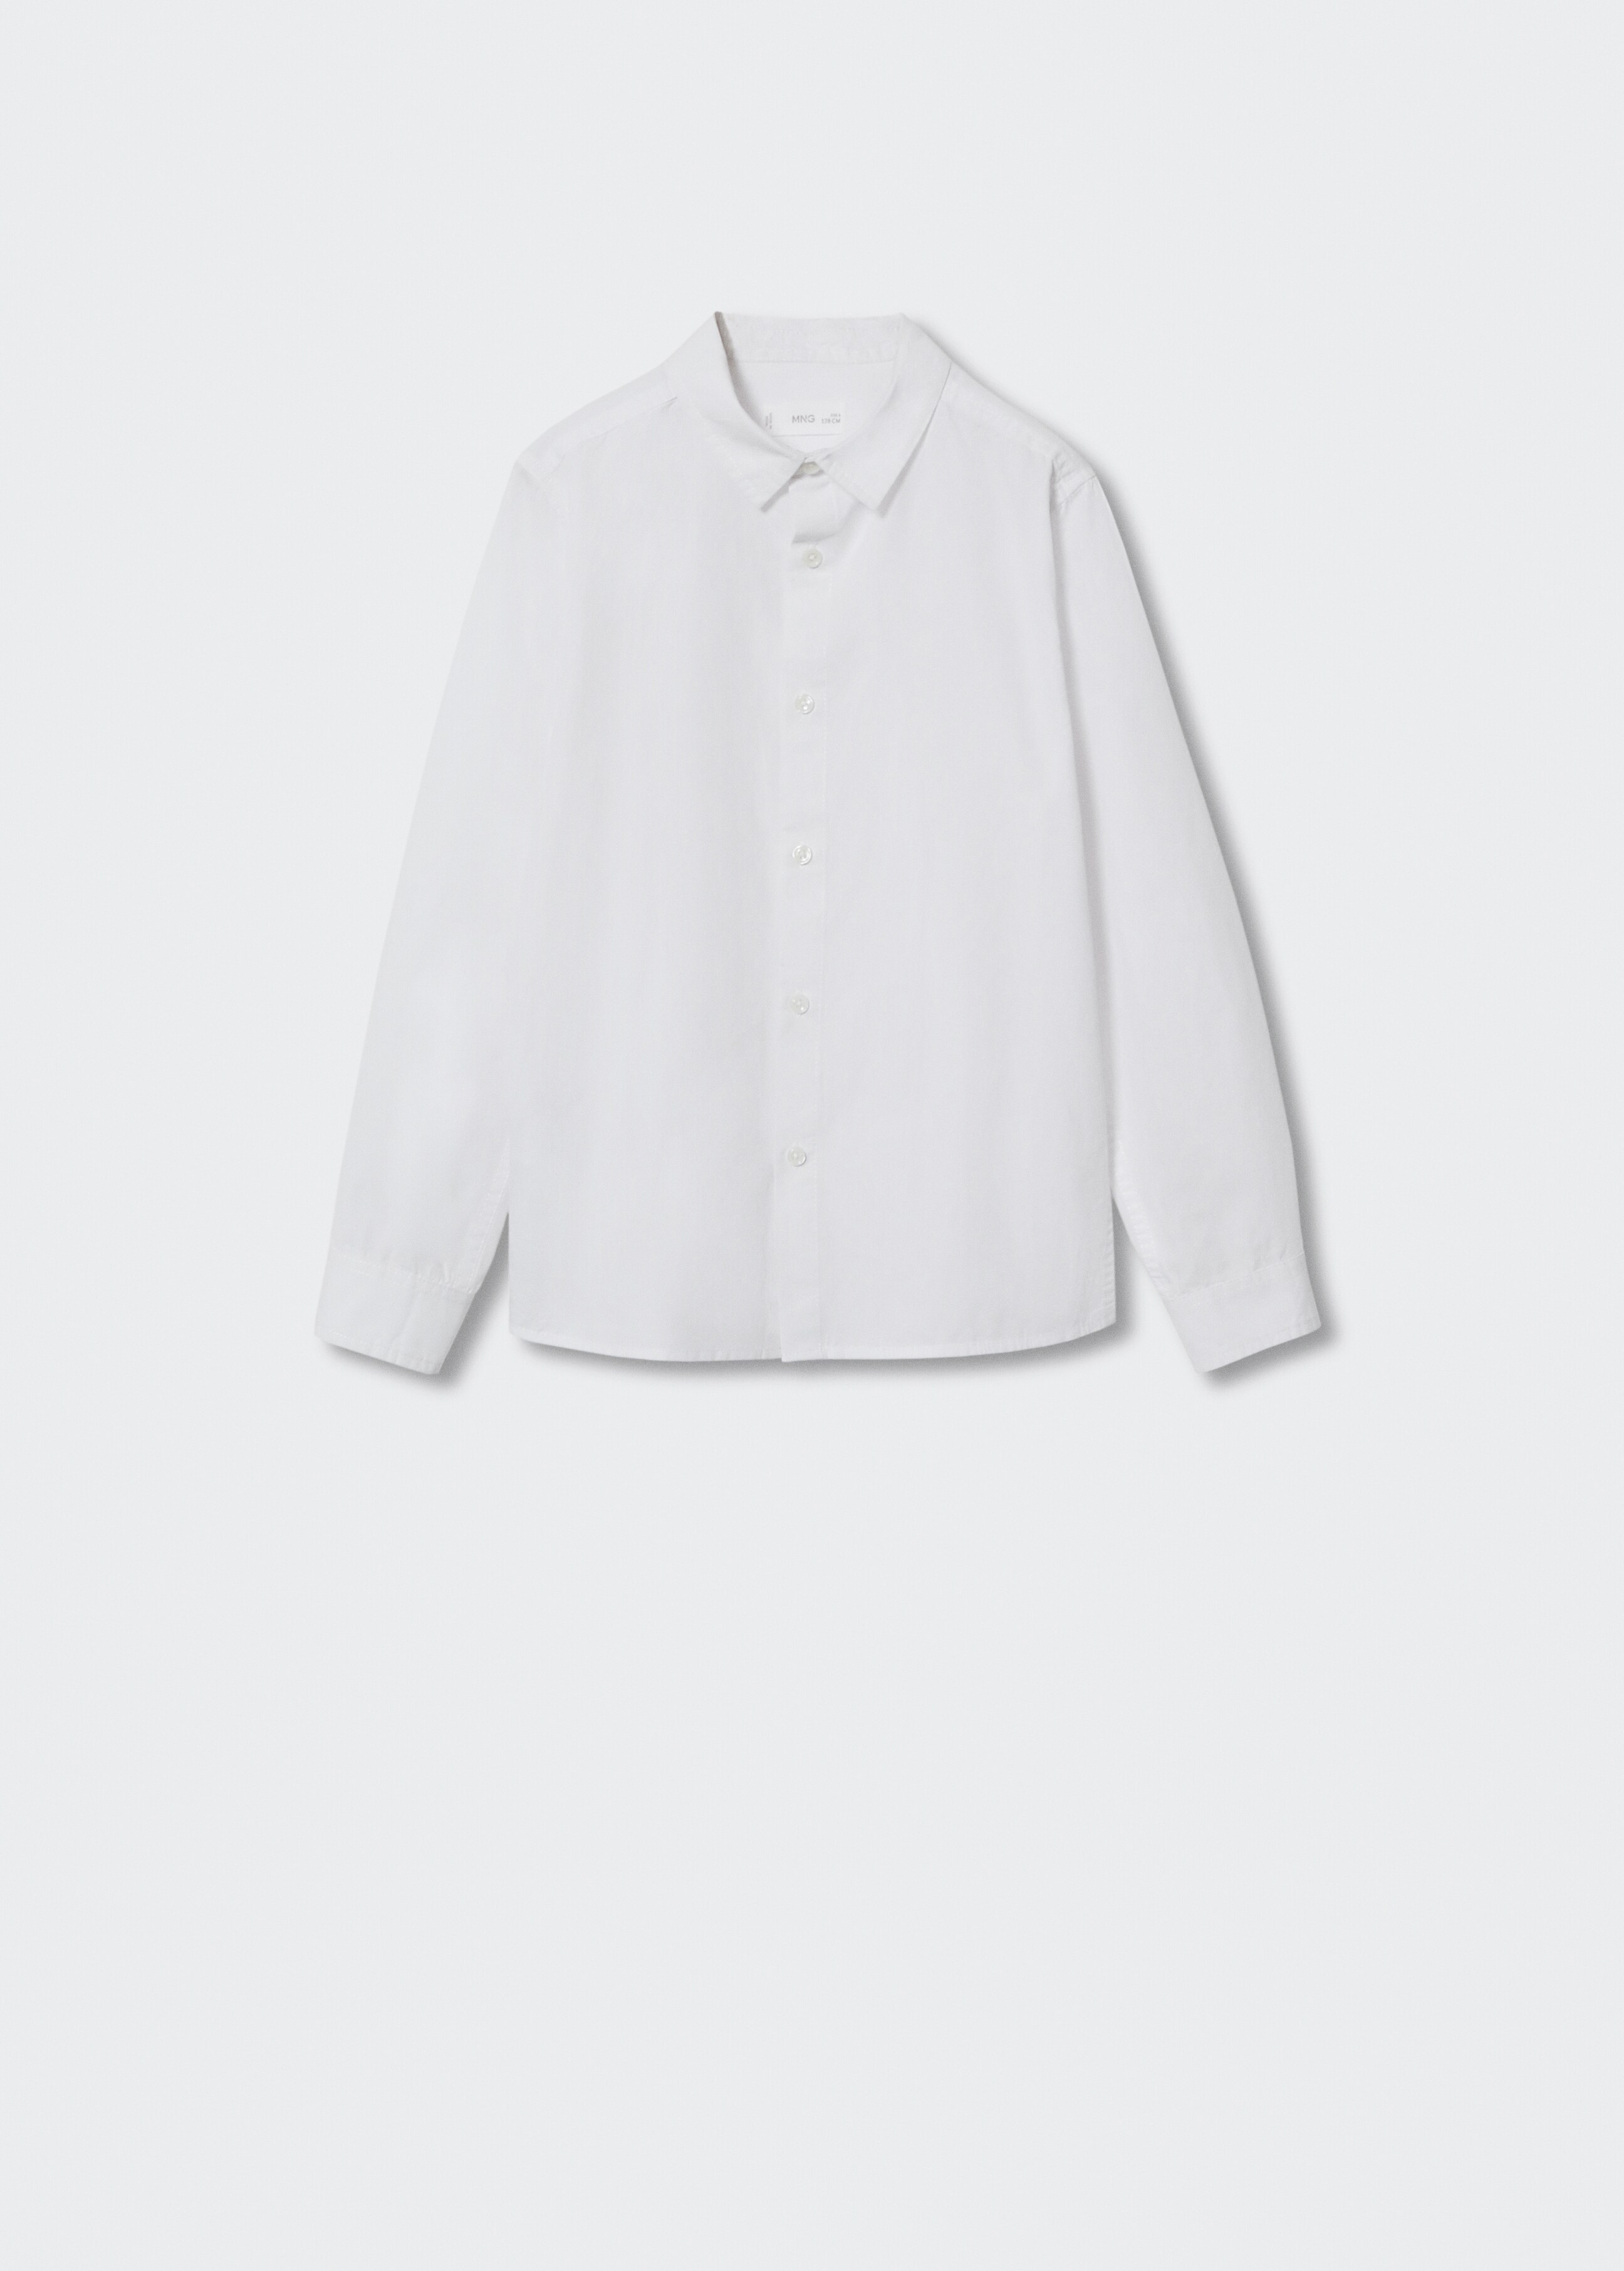 Camisa básica algodão - Artigo sem modelo